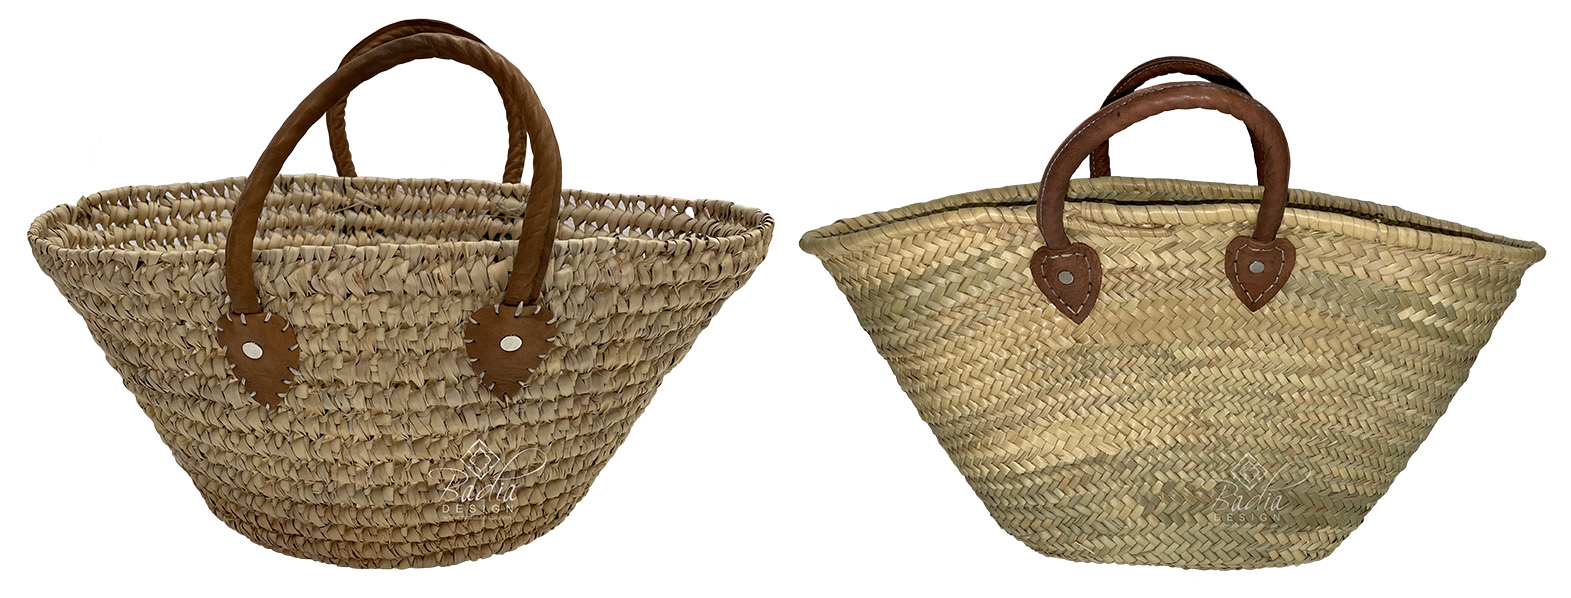 moroccan-natural-color-basket-hb017.jpg